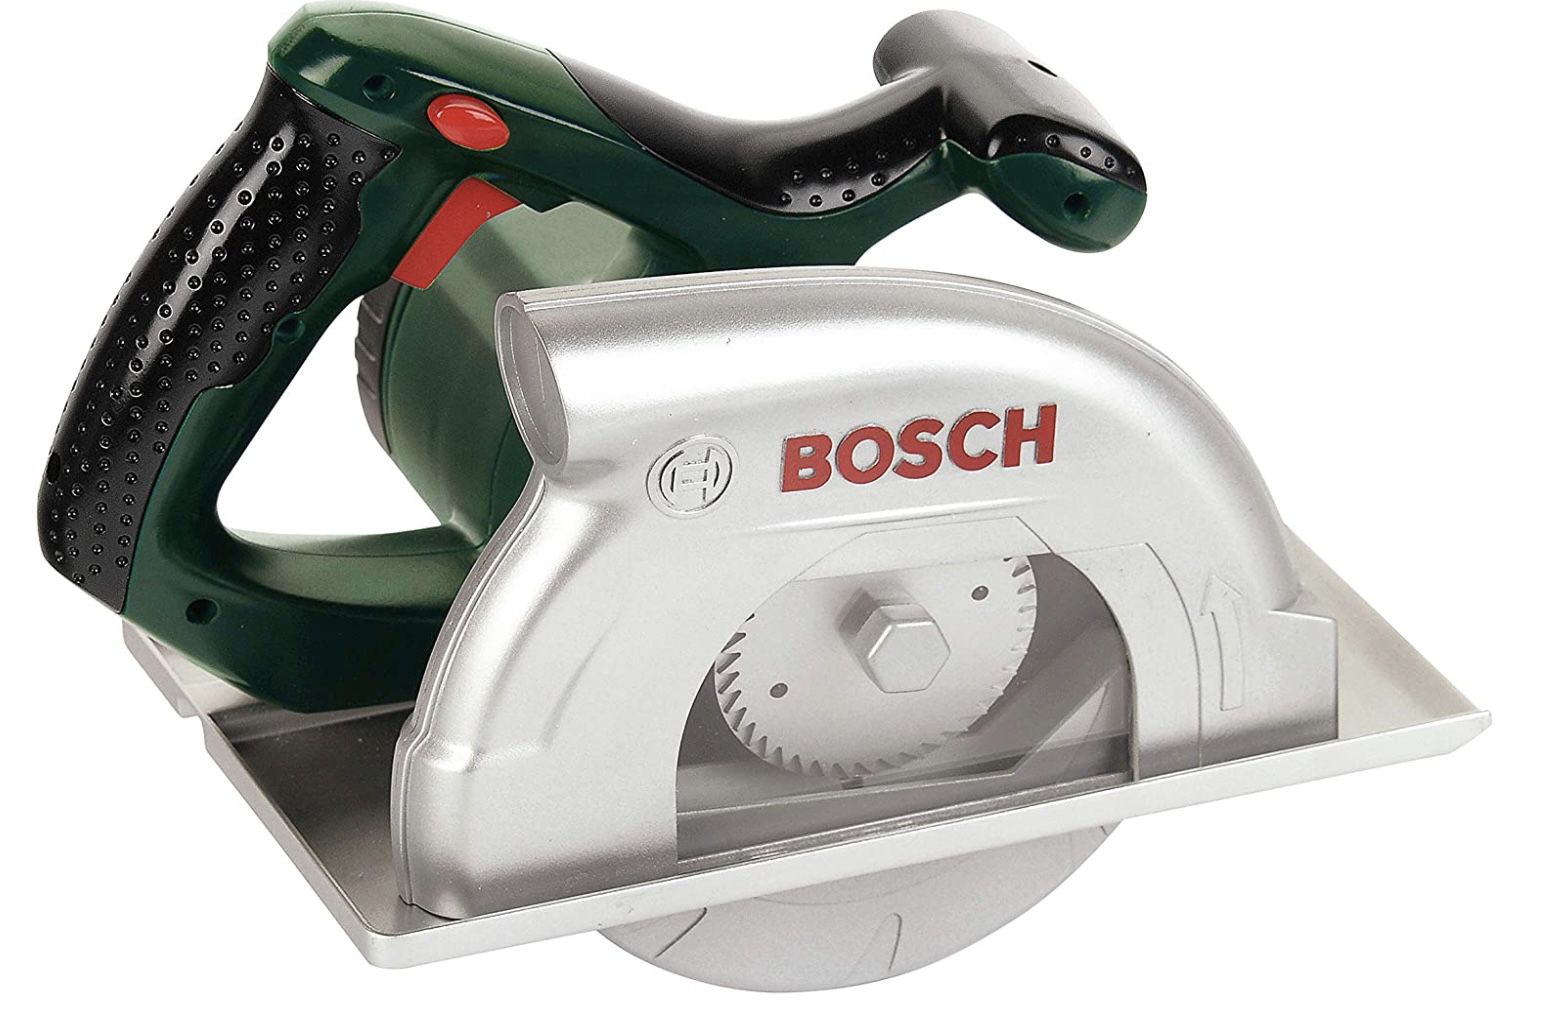 klein toys 8421   Bosch Kreissäge für 9,10€ (statt 22€)